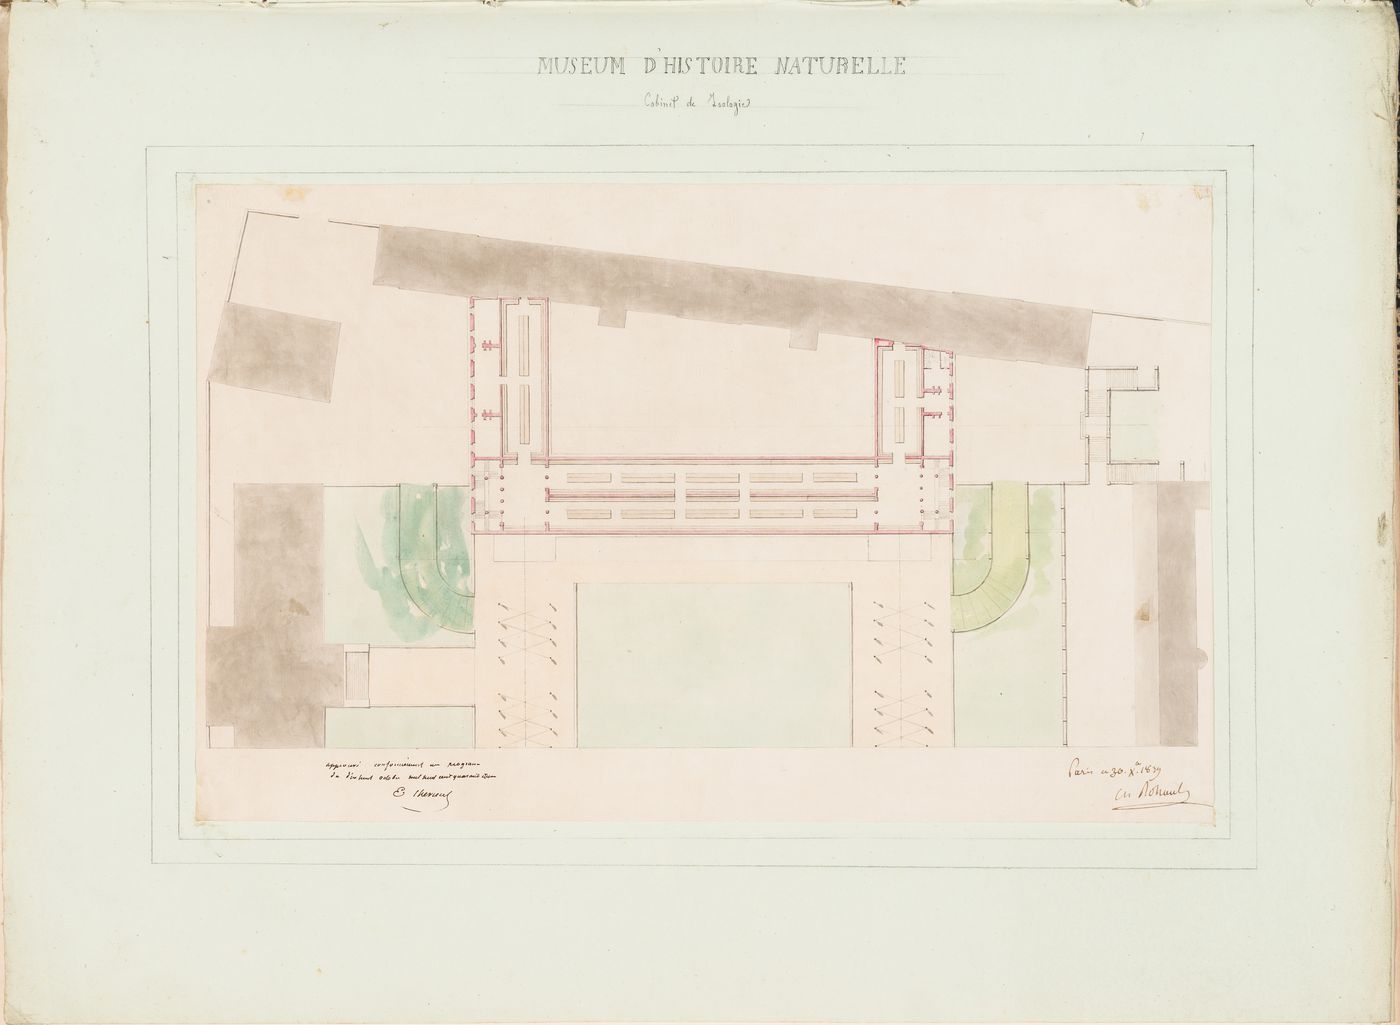 Project for a Galerie de zoologie, 1839: Plan